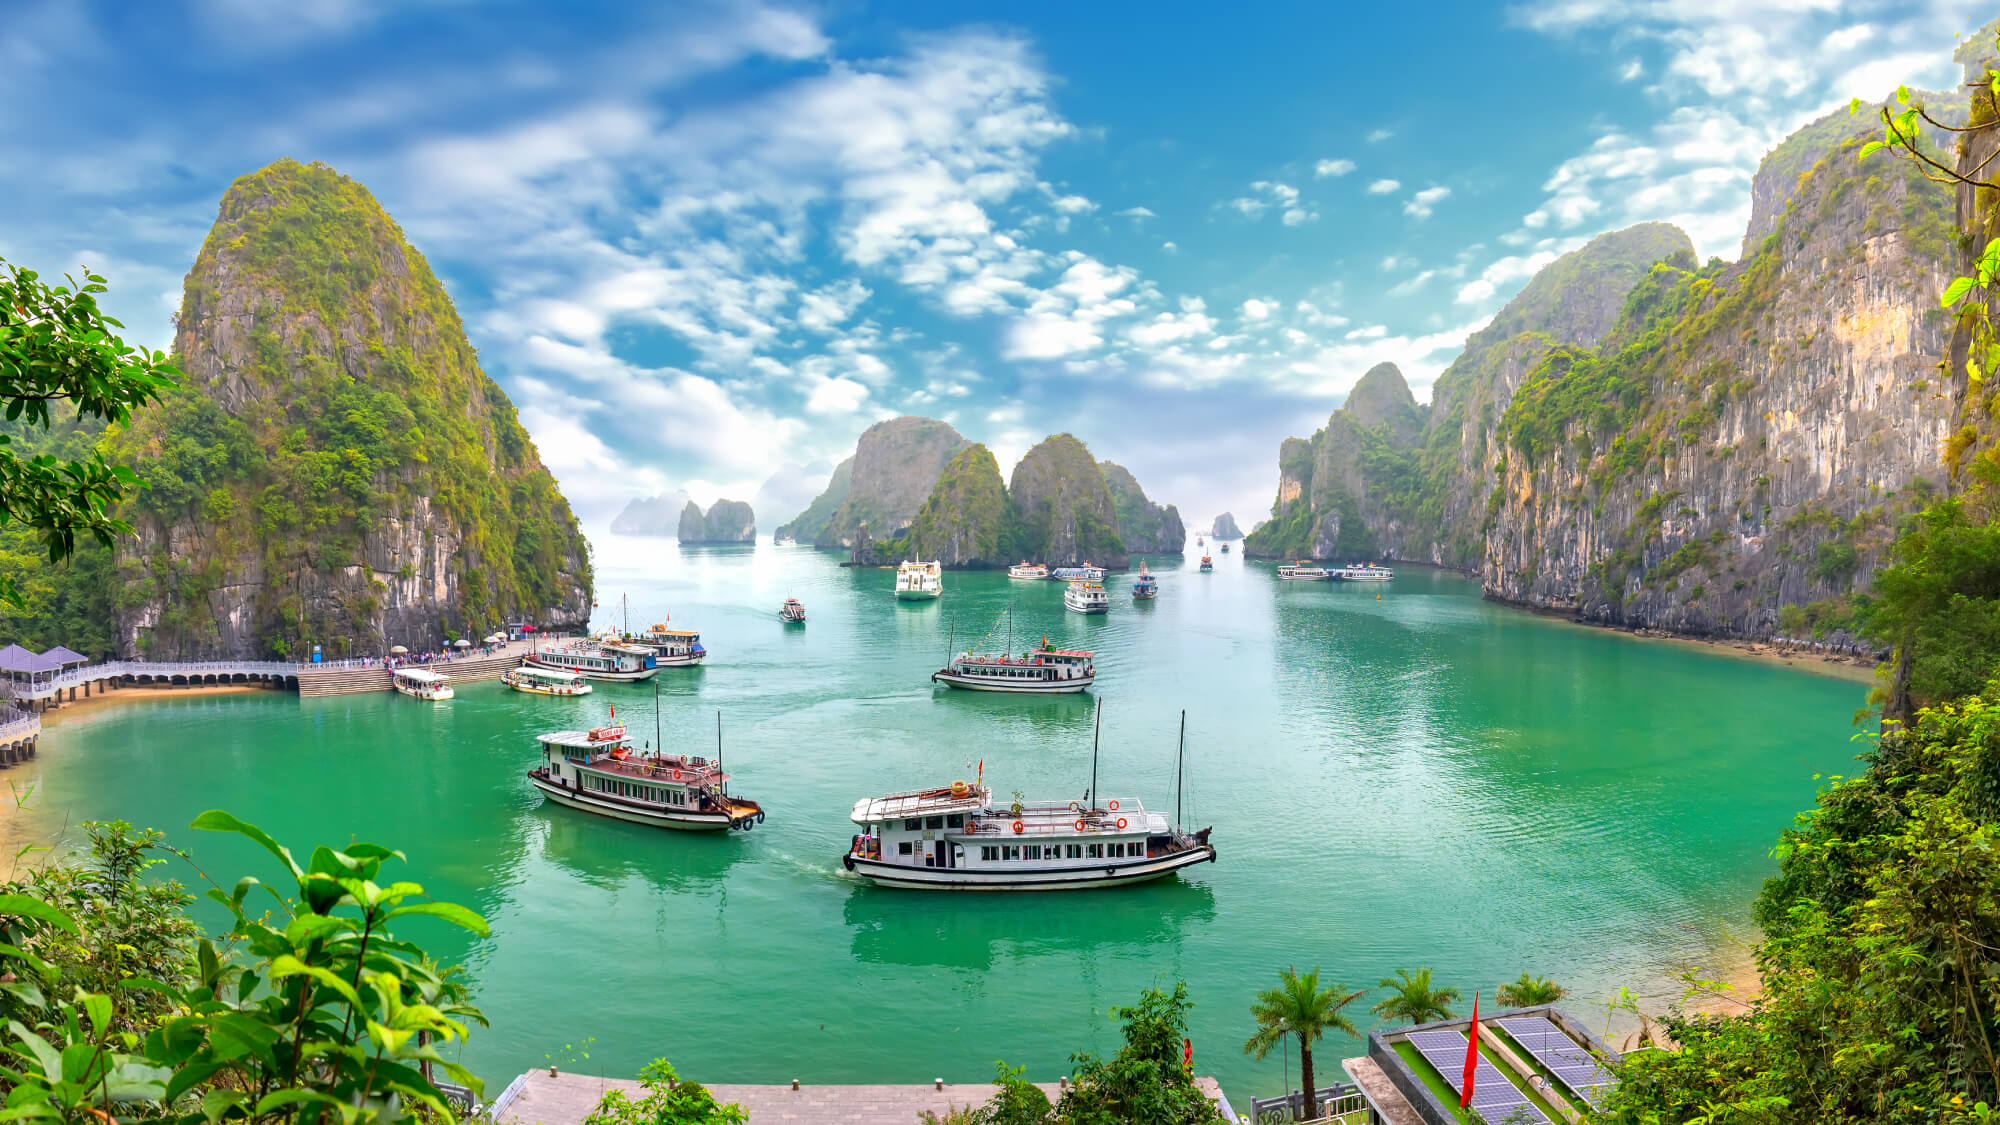 Погода в ноябре: возможен ли пляжный отдых в нянчанге, фантьете, фукуоке и других курортах вьетнама?